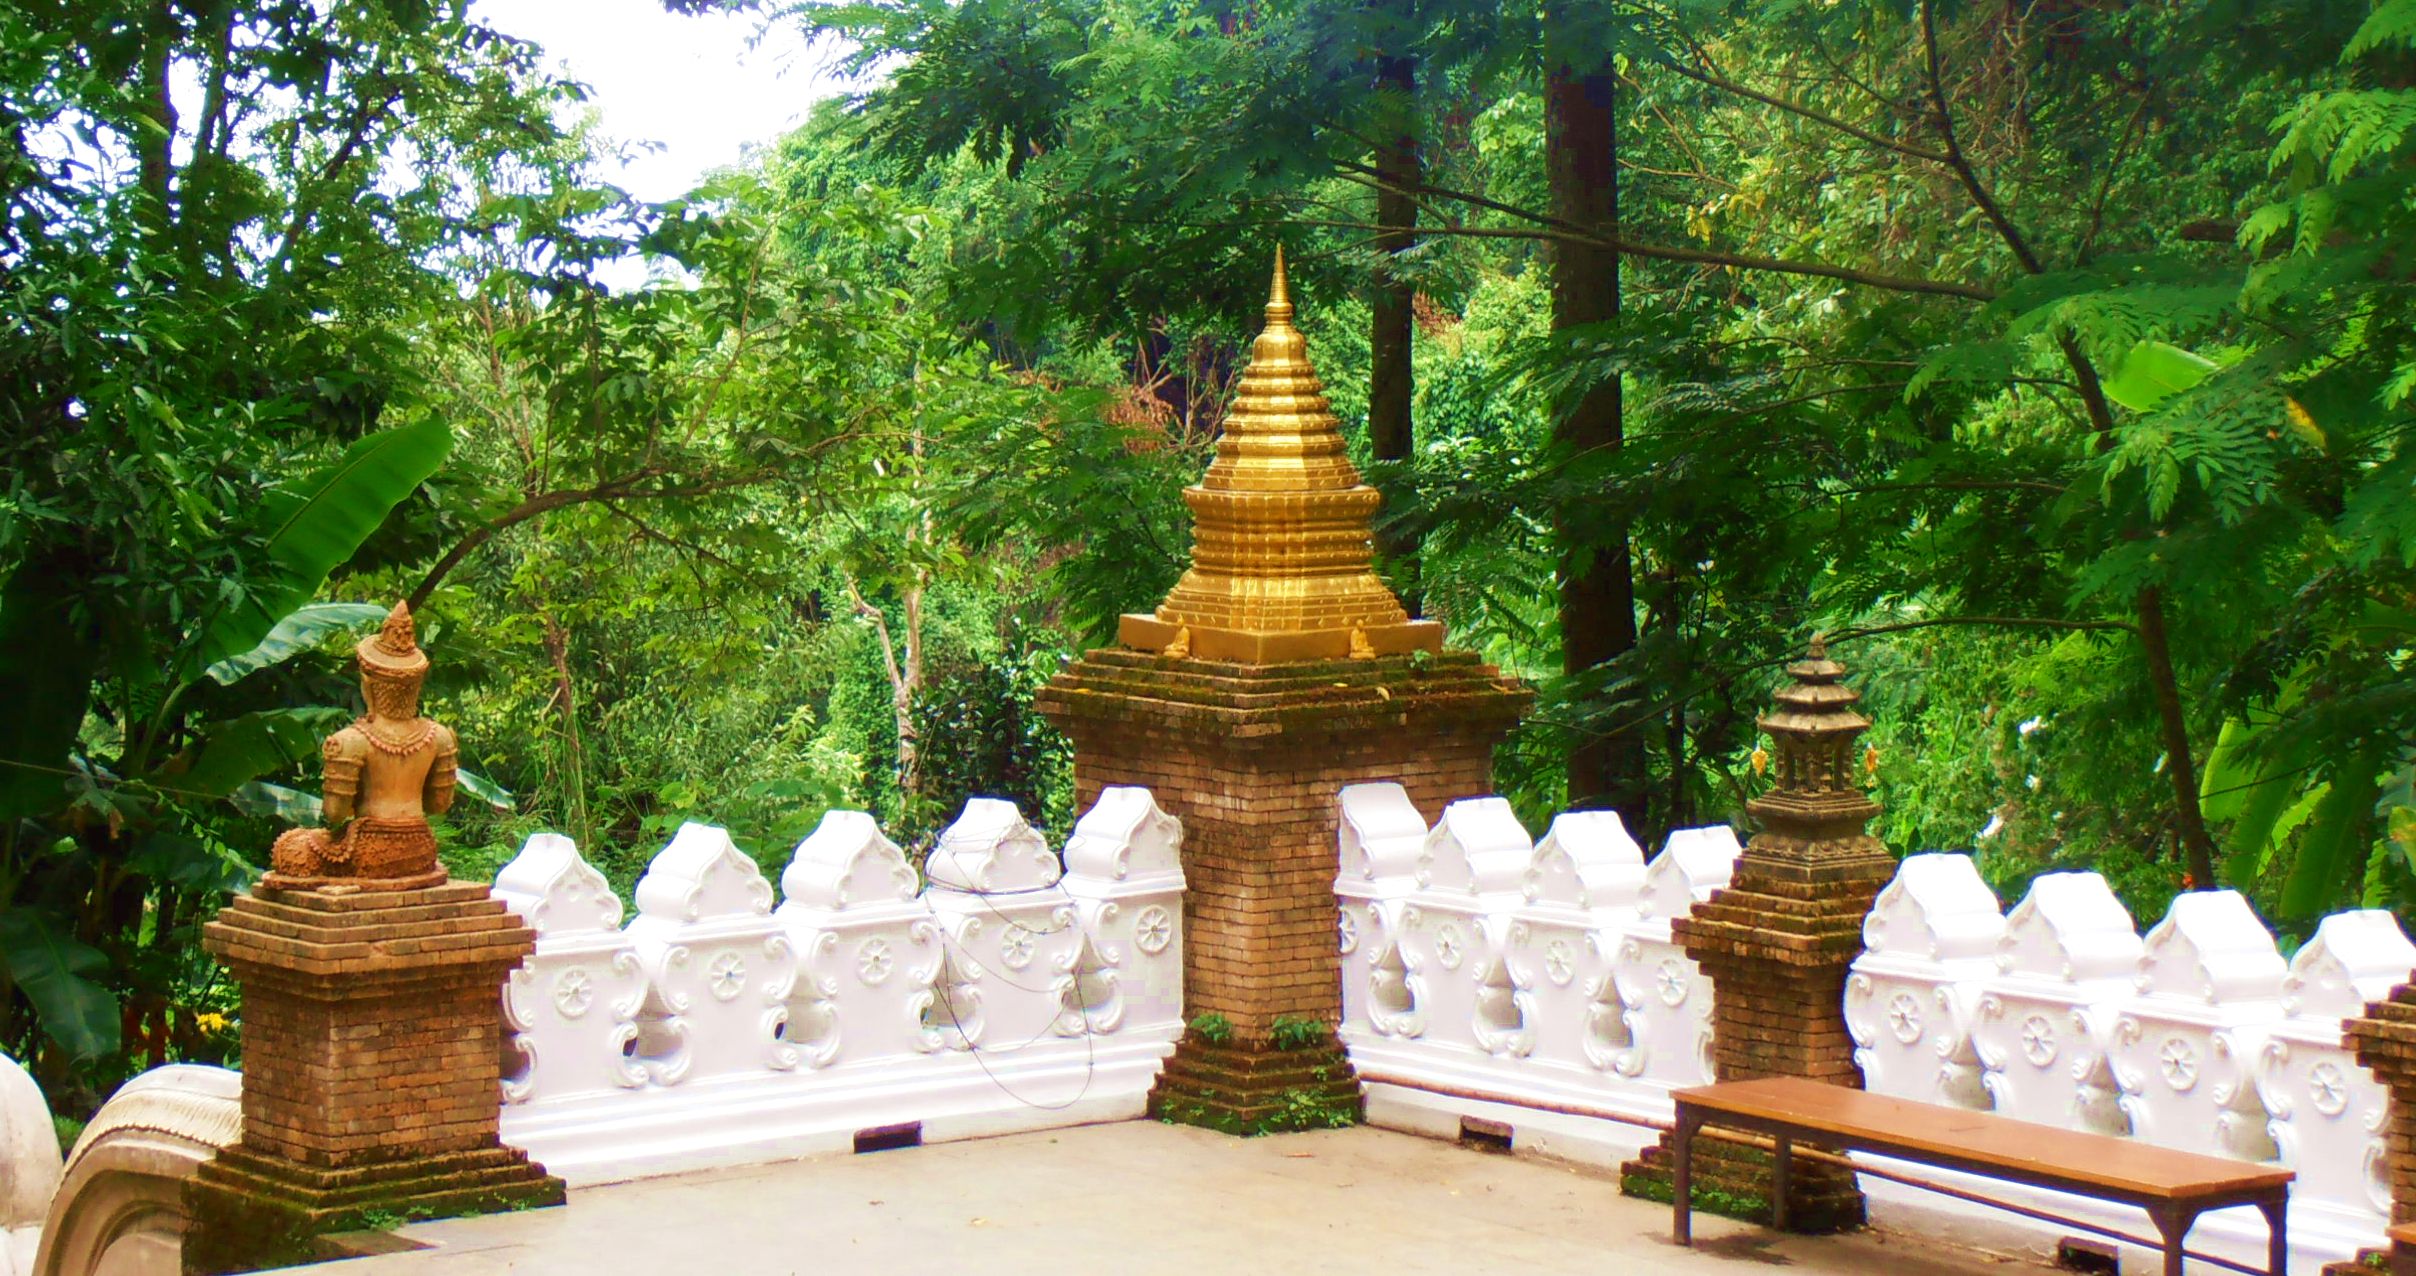 Wat Palad Chiang Mai Thailand